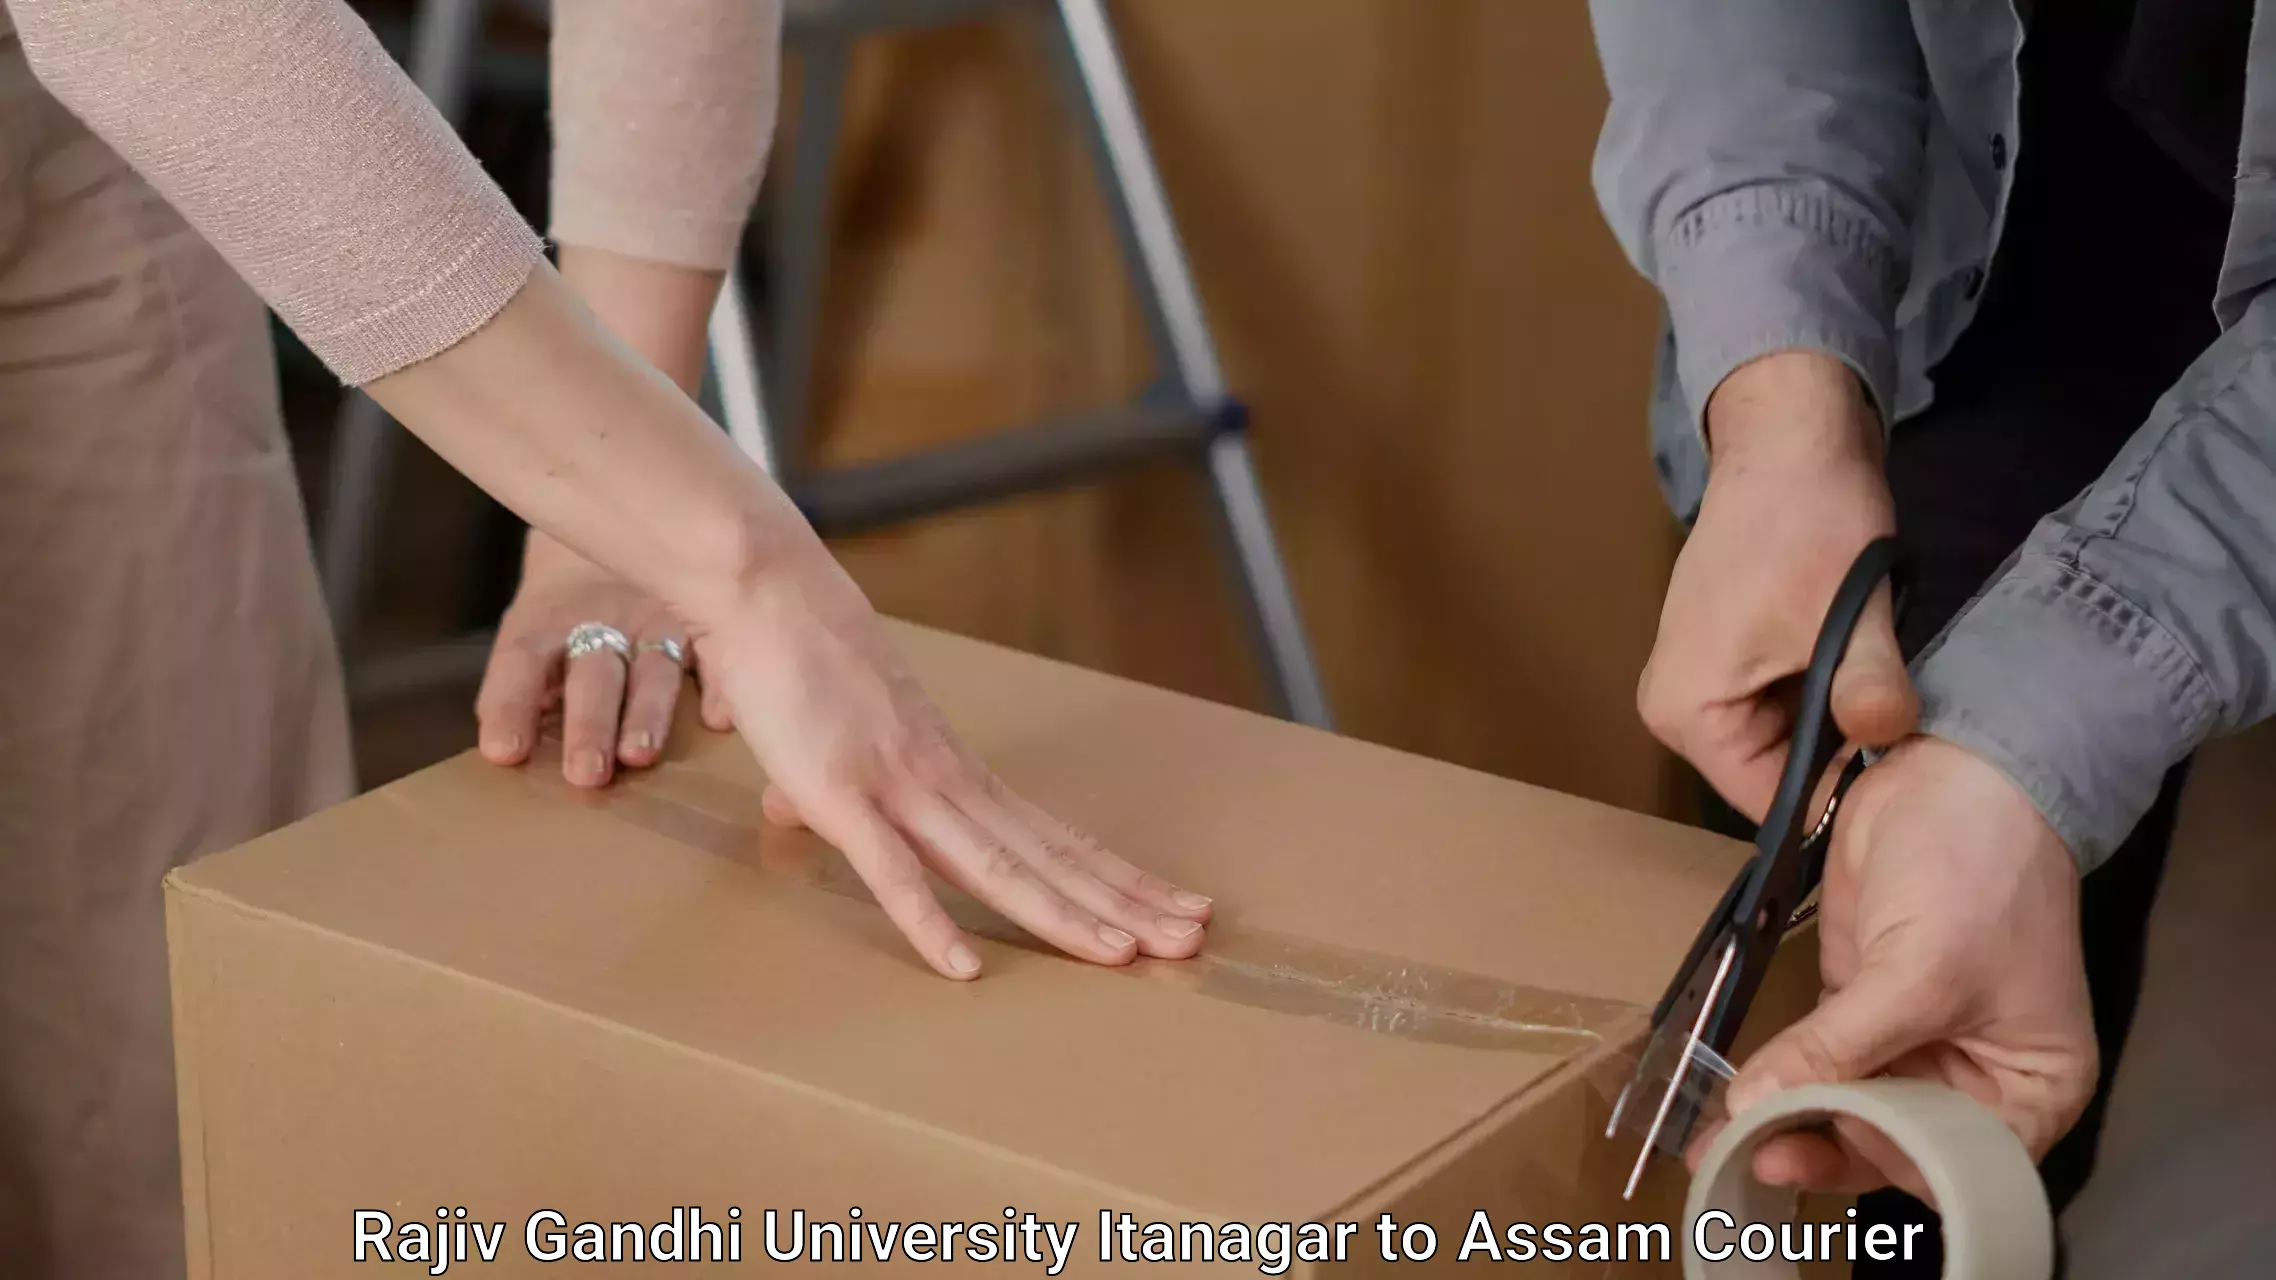 Furniture transport professionals Rajiv Gandhi University Itanagar to Mirza Kamrup